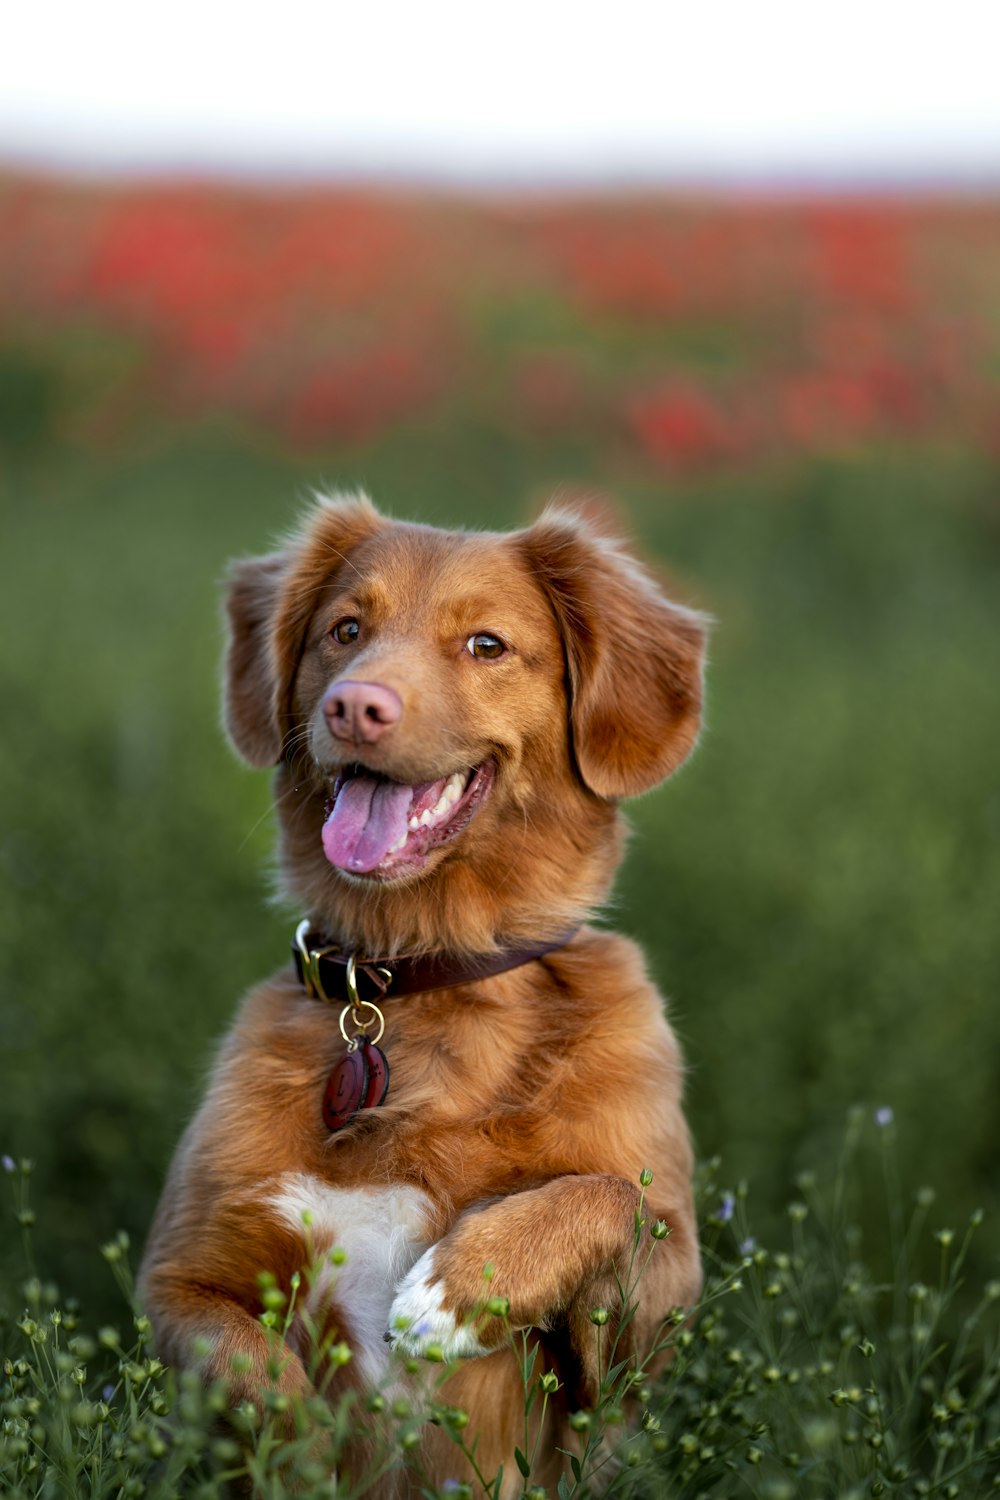 brauner langhaariger Hund tagsüber auf grünem Grasfeld